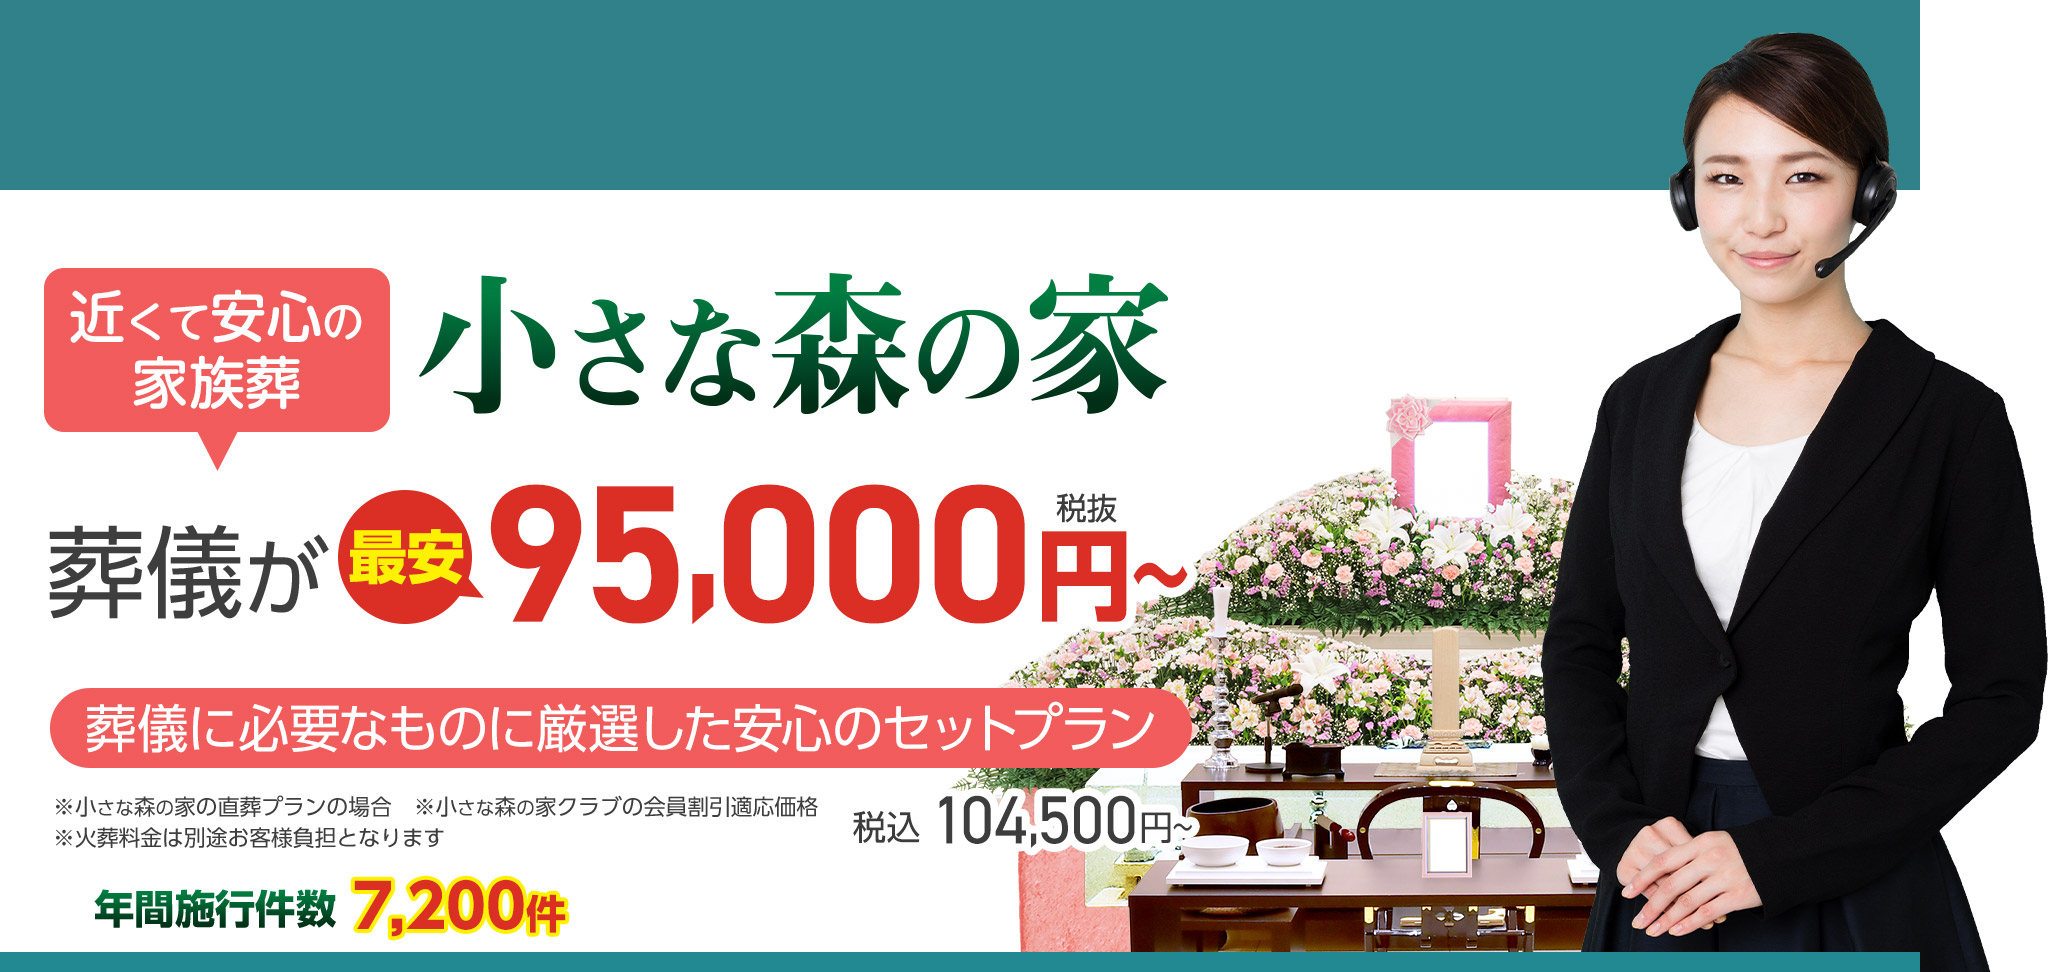 松戸市で家族葬をお探しなら小さな森の家 近くて安心の家族葬 葬儀が税抜150,000円